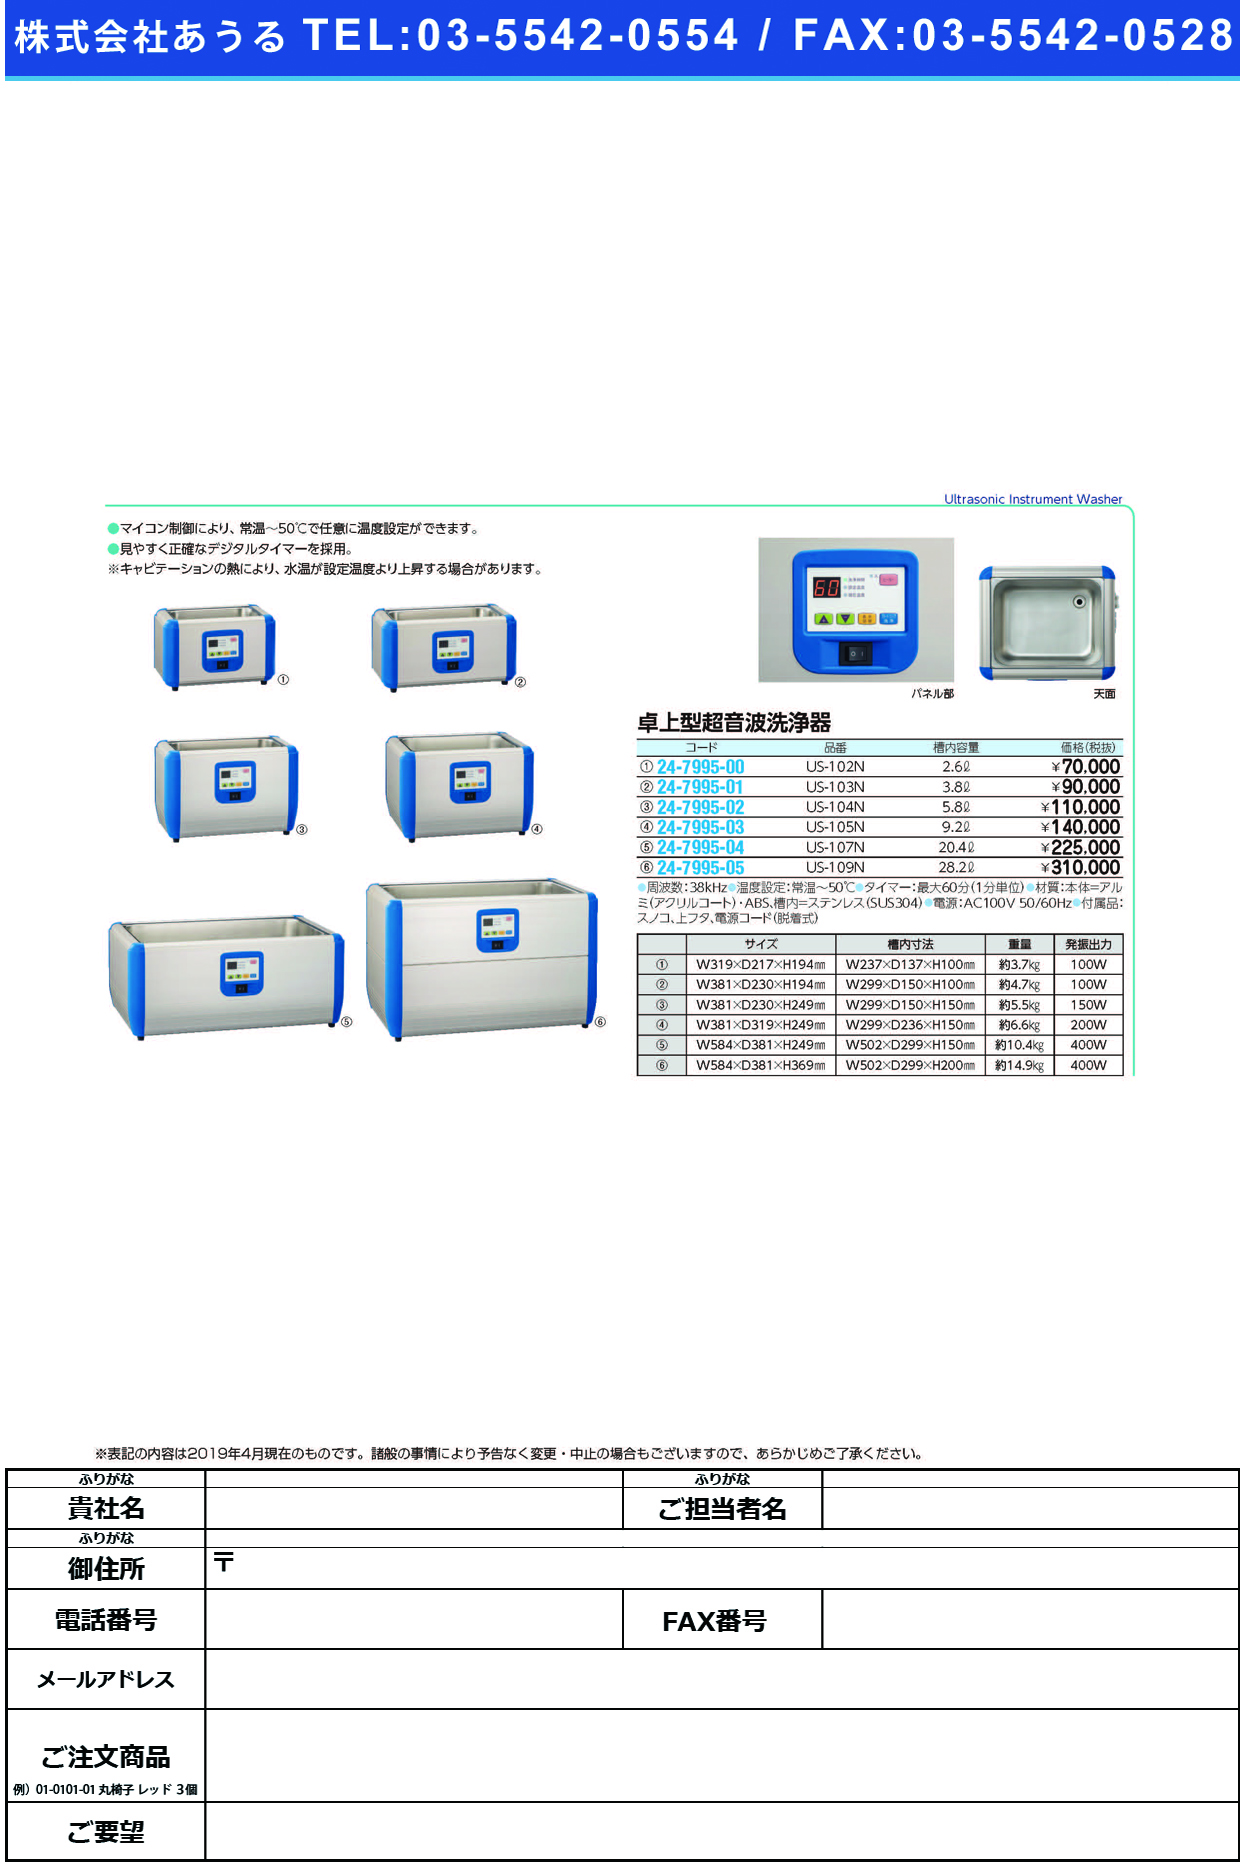 (24-7995-00)卓上型超音波洗浄器US-102N ﾀｸｼﾞｮｳｶﾞﾀﾁｮｳｵﾝﾊﾟｾﾝｼﾞ(三商)【1台単位】【2019年カタログ商品】